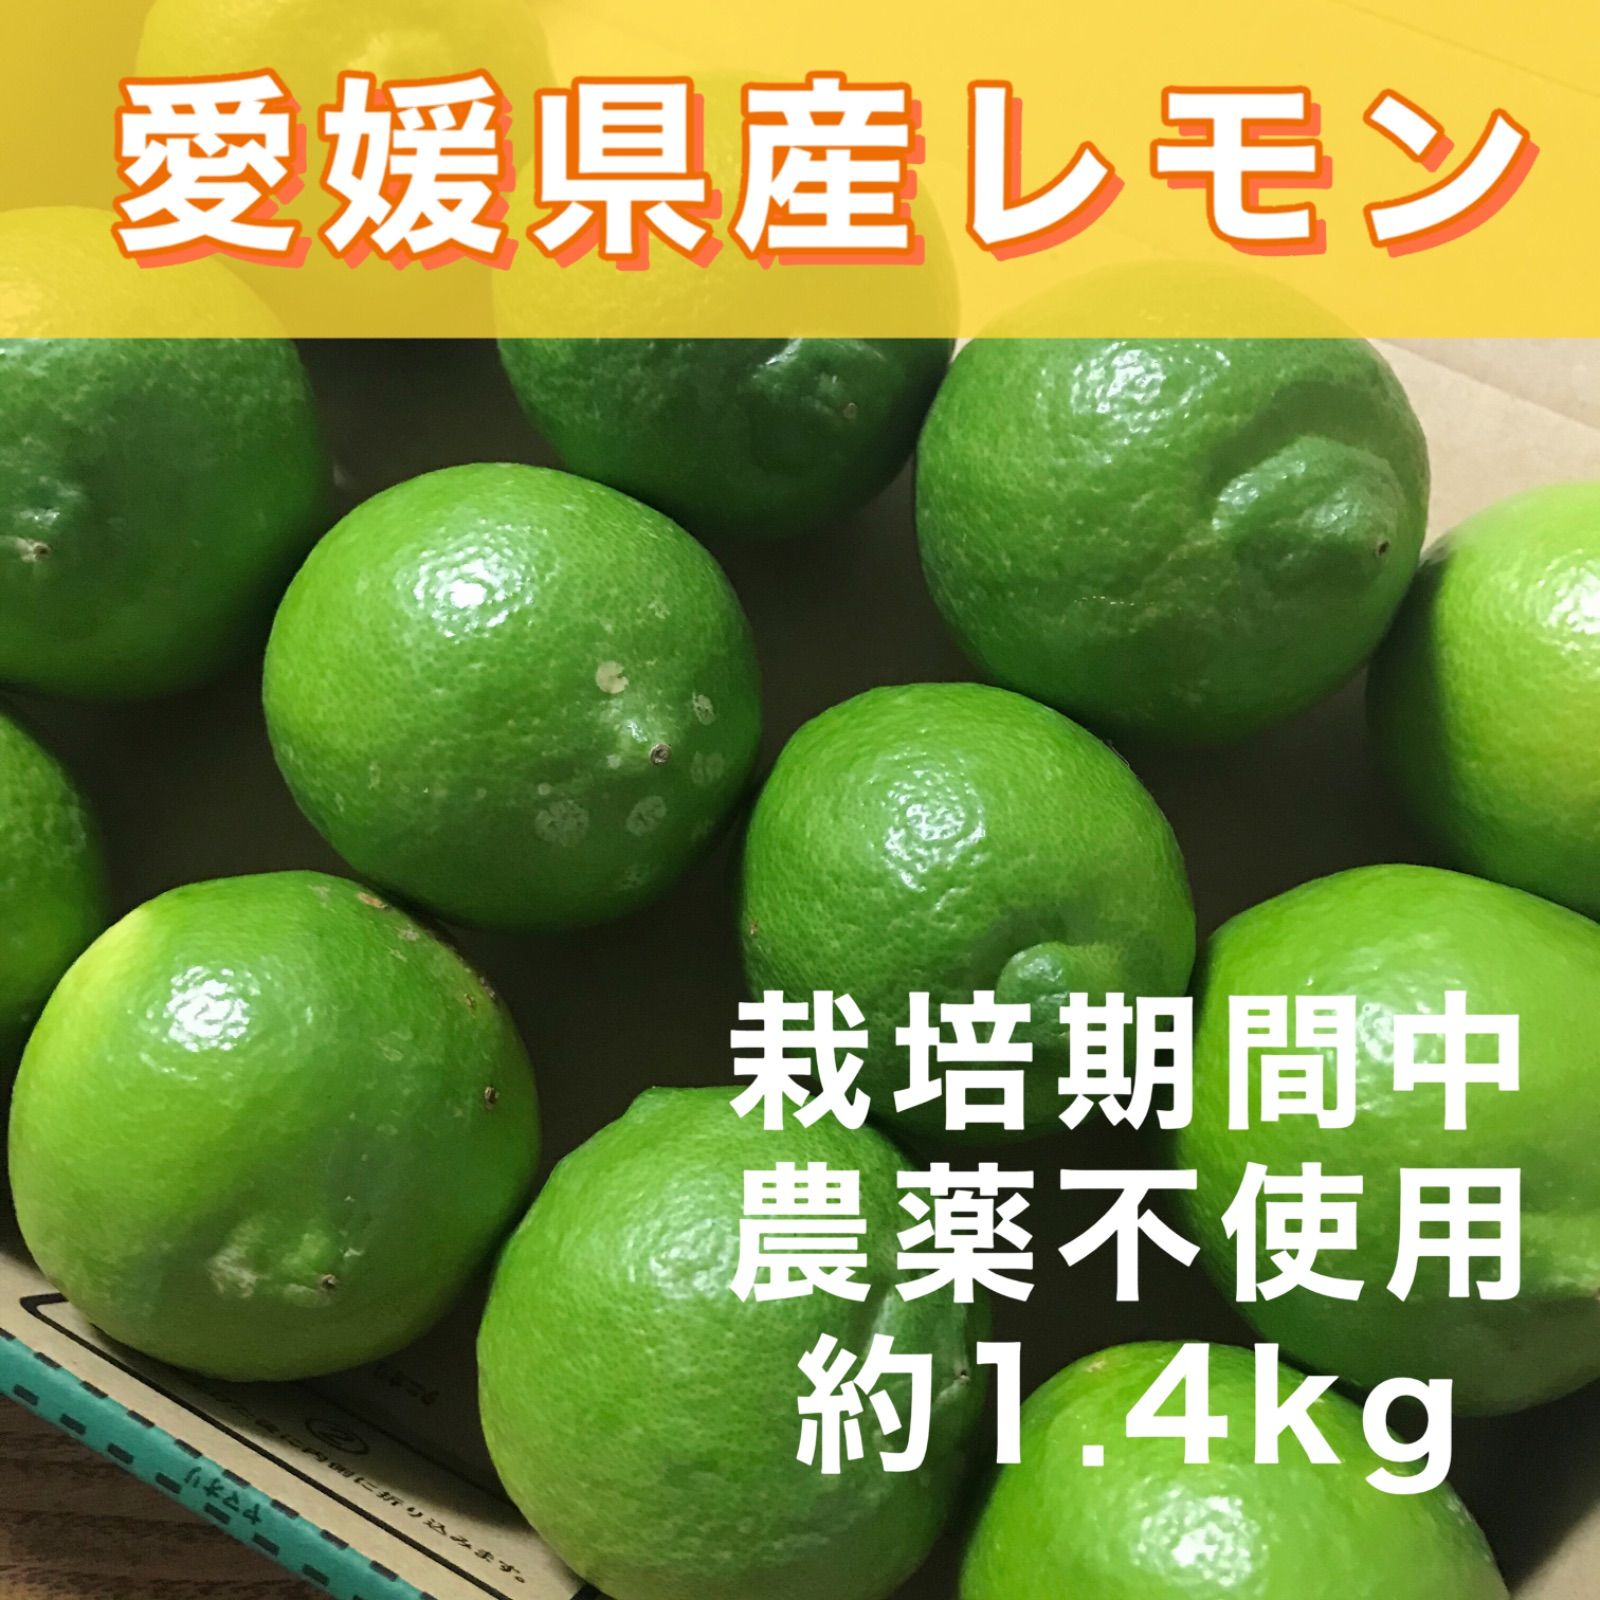 愛媛県産 国産 グリーンレモン 約3kg 農薬不使用 レモン 果物 フルーツ ③